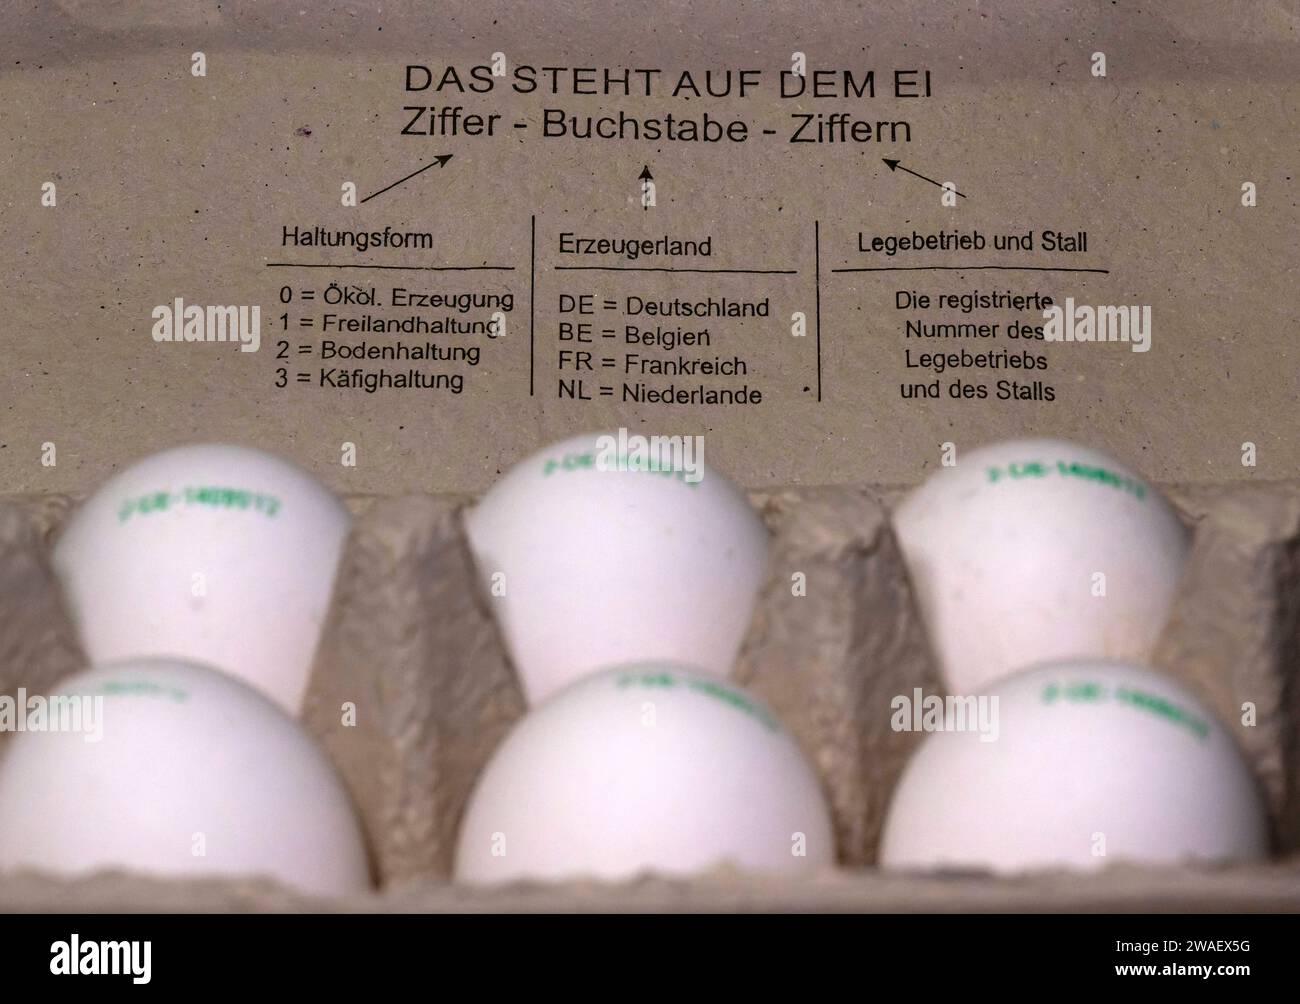 04.01.2024, Frische Hühnereier, Eine Zehner-Schachtel Hühnereier mit Herkunftskennzeichnung auf der Eierschale aufgedruckt. Haltungsform, Erzeugerland, Legebetrieb, Stall, 04.01.2024, Eier in der Eierschachtel 04.01.2024, Eier in der Eierschachtel *** 04 01 2024, Fresh hens eggs, One carton of ten hens eggs with origin marking printed on the egg shell, farming method, country of production, laying farm, barn, 04 01 2024, Eggs in the egg carton 04 01 2024, Eggs in the egg carton Stock Photo